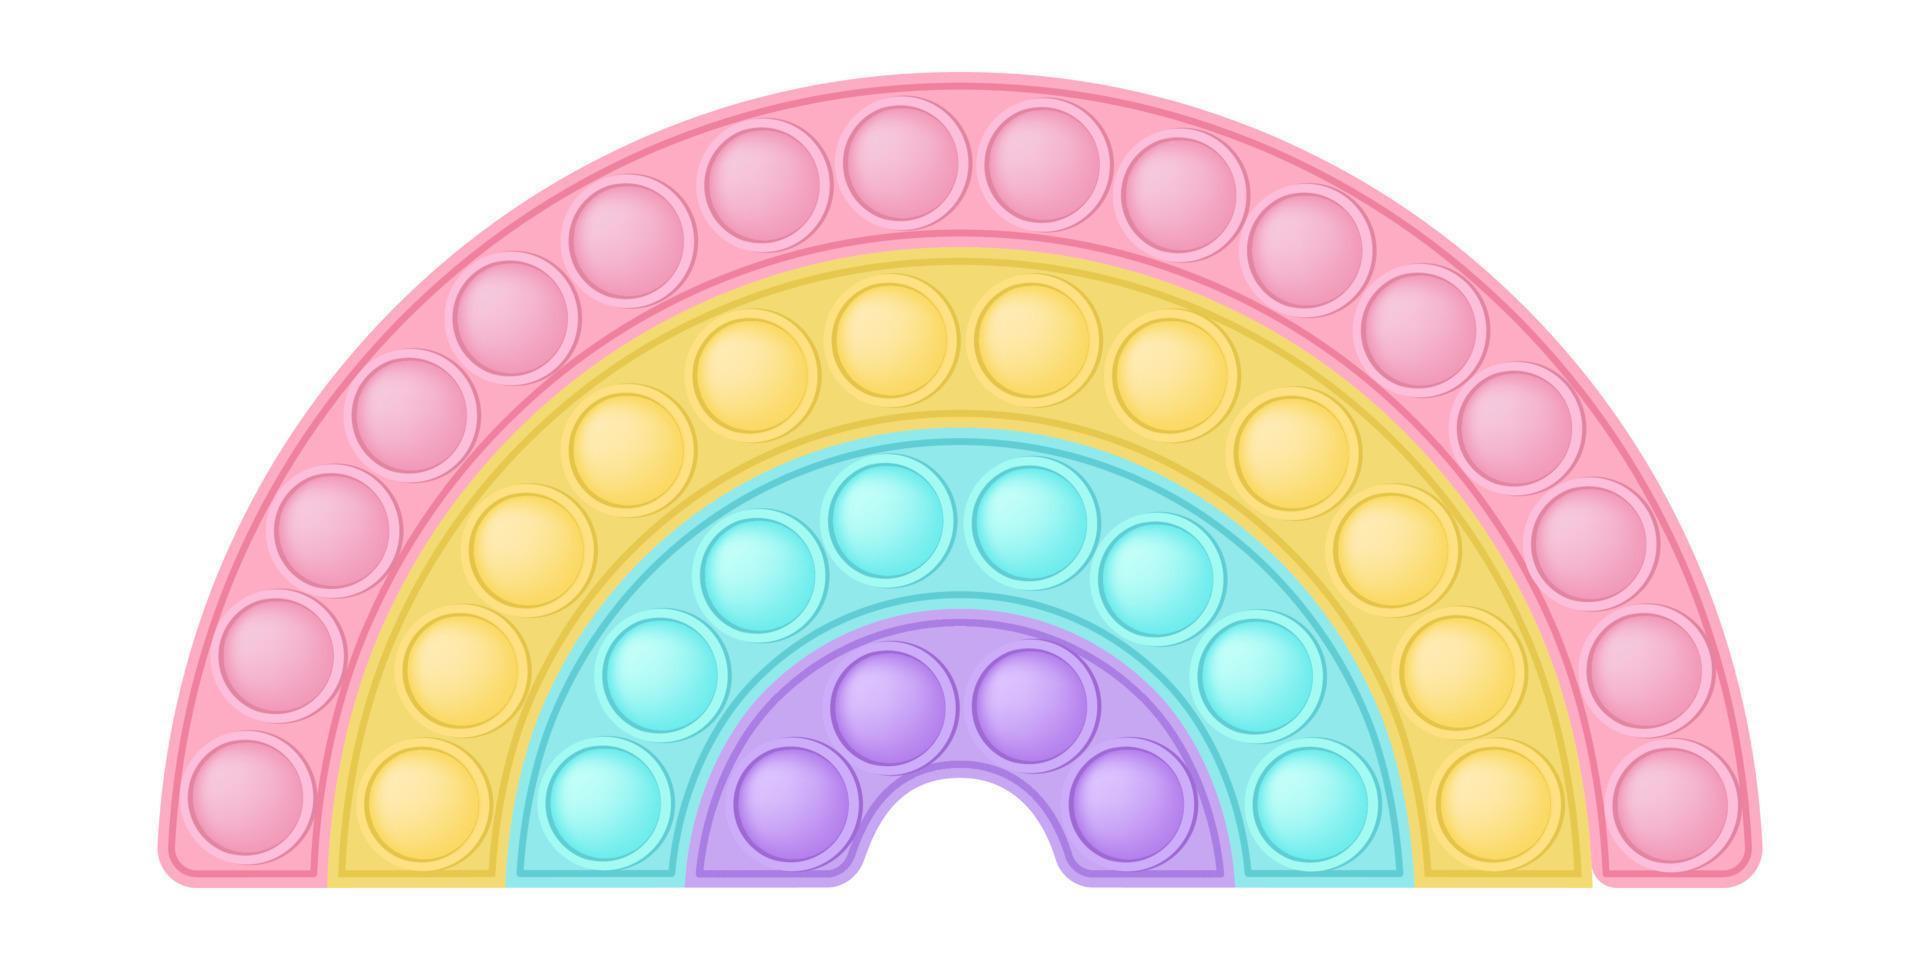 Knallspielzeug Regenbogen-Silikonspielzeug für Zappeln. süchtig machendes Anti-Stress-Spielzeug in pastellrosa Farbe. Bubble sensorisches Entwicklungsspielzeug für Kinderfinger. vektorillustration isoliert vektor